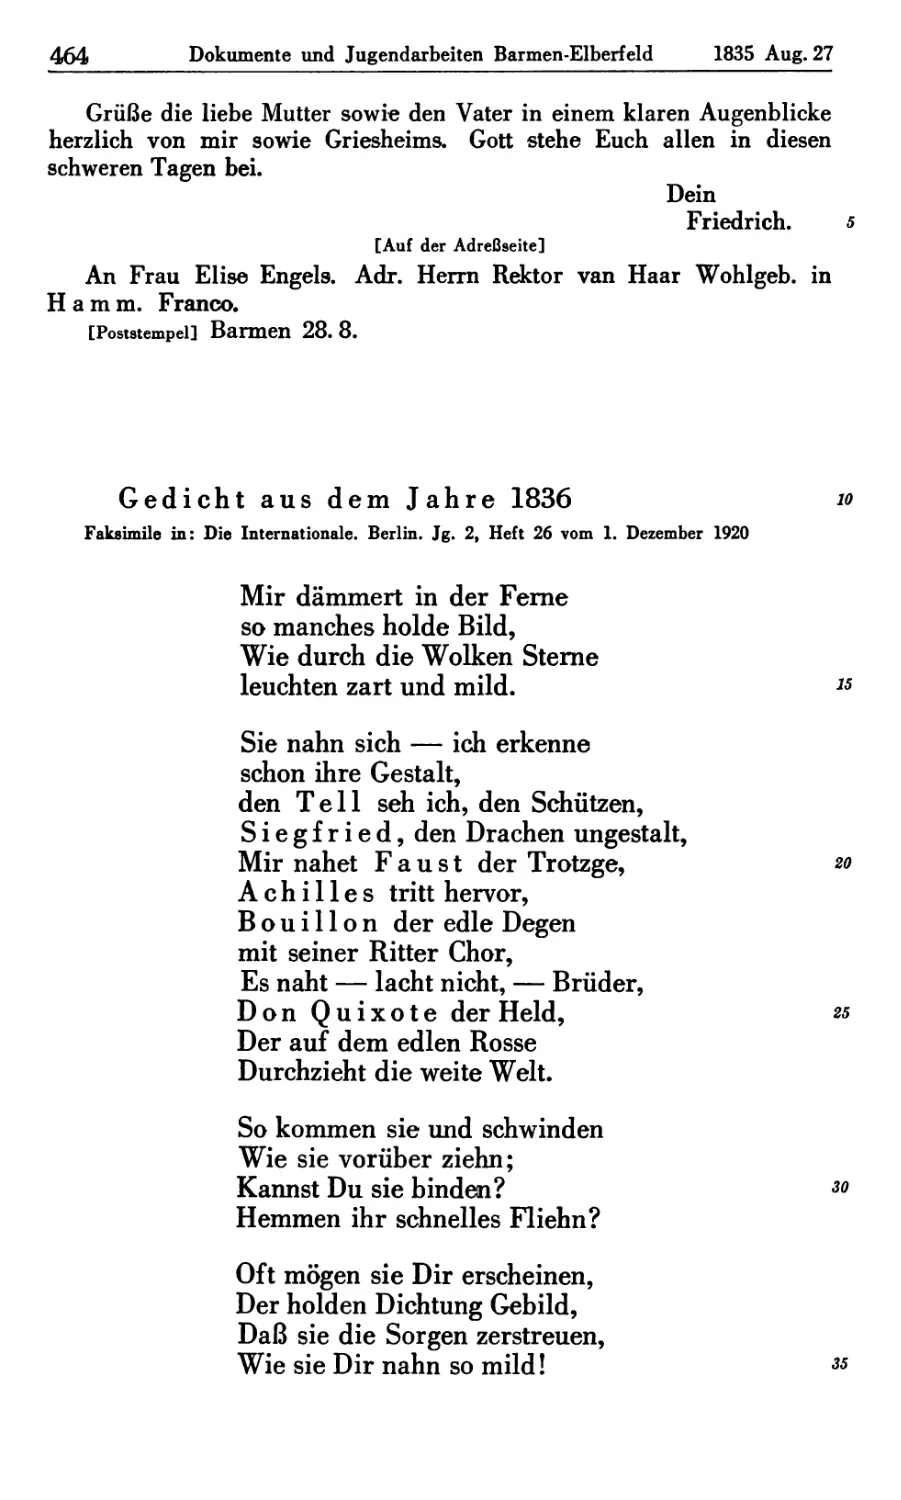 5. Gedicht aus dem Jahre 1836